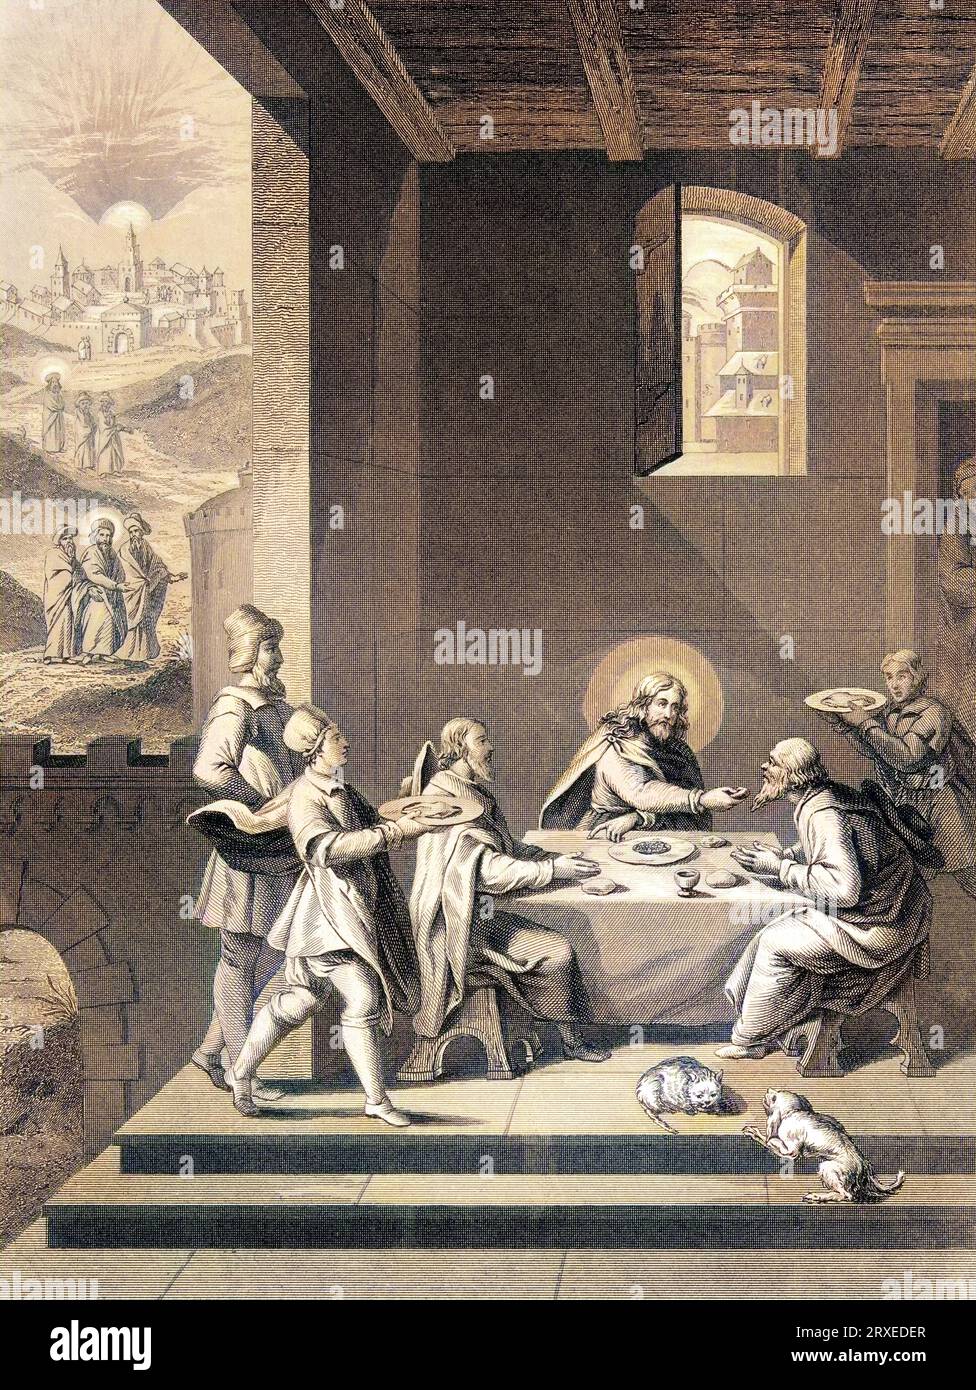 Cristo e i Pellegrini ad Emmaus. Illustrazione colorata per la vita di nostro Signore Gesù Cristo scritta dai quattro evangelisti, 1853 Foto Stock